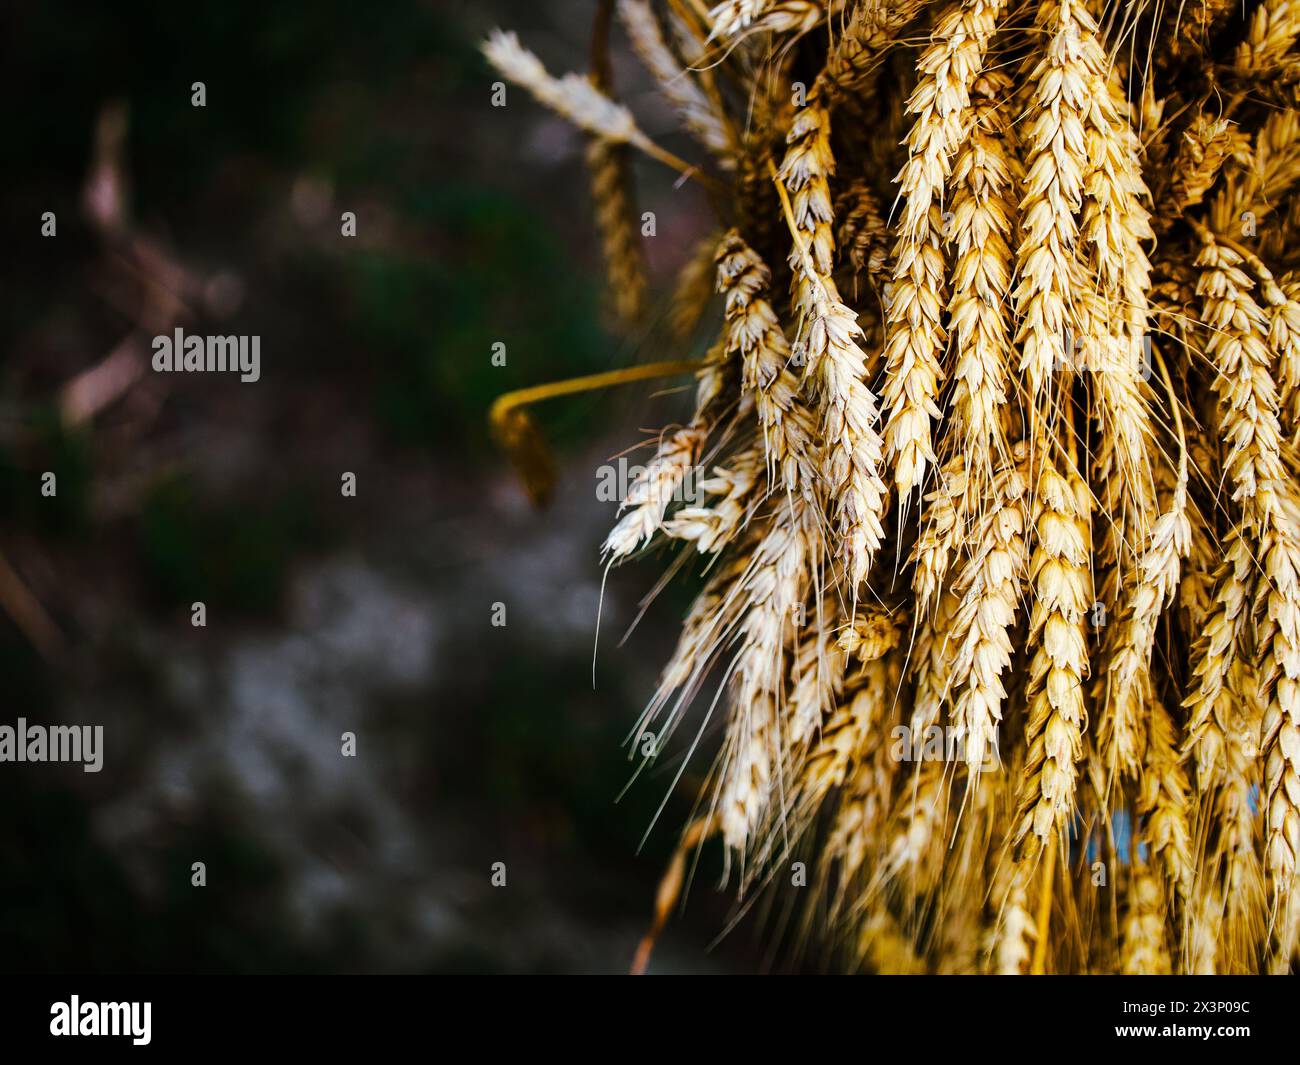 Detaillierte Bilder mit Schwerpunkt auf den reichhaltigen Texturen von gereiftem Weizen; perfekt für die Ernte oder Naturinhalte. Stockfoto